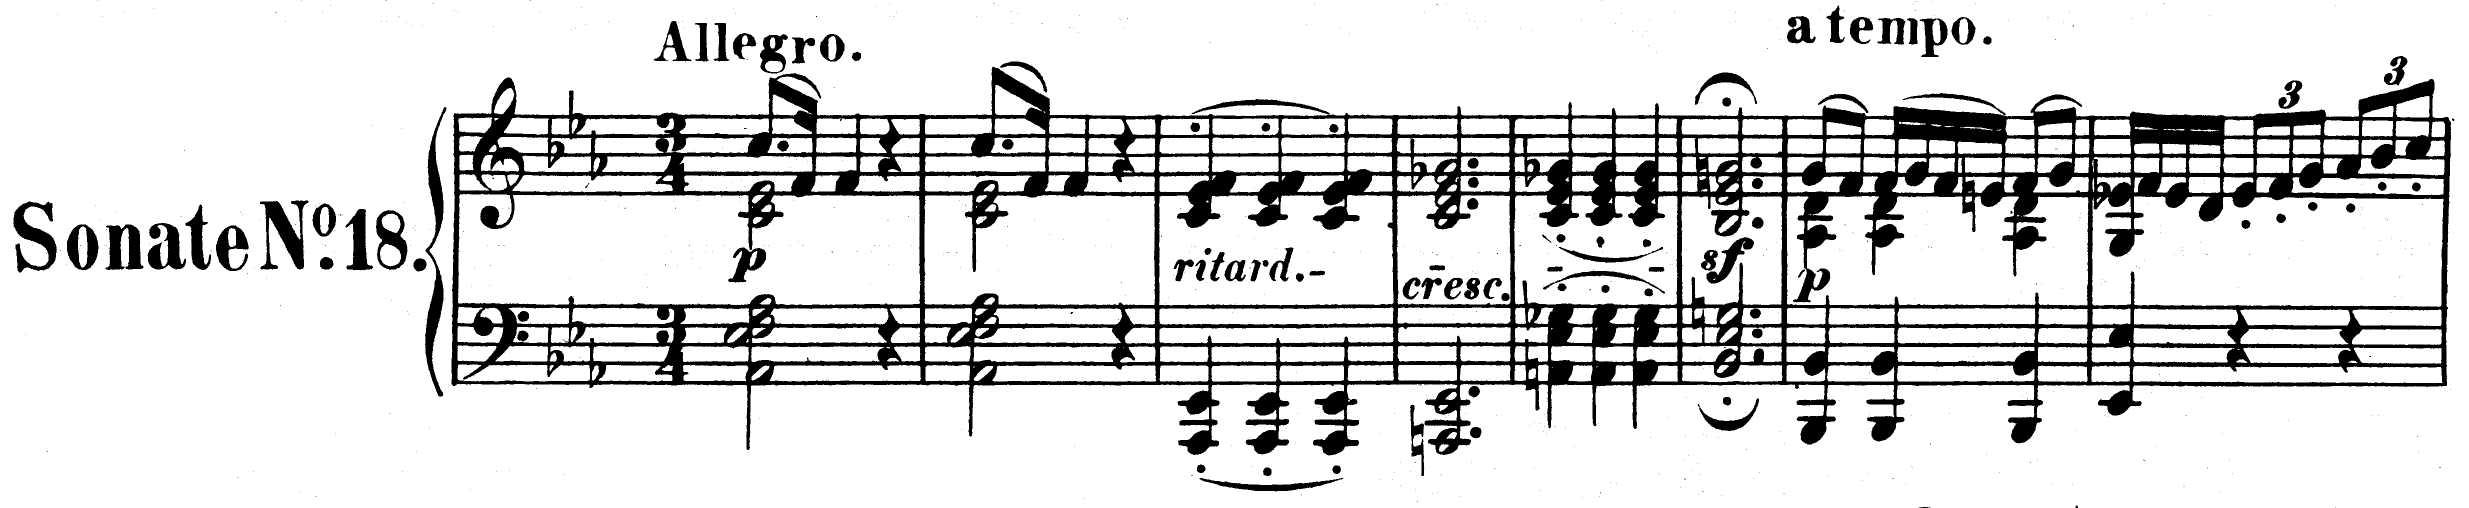 PV-Beethoven%2C_Ludwig_van-Werke_Breitkopf_Kalmus_Band_21_B141_Op_31_No_3_scan.jpg